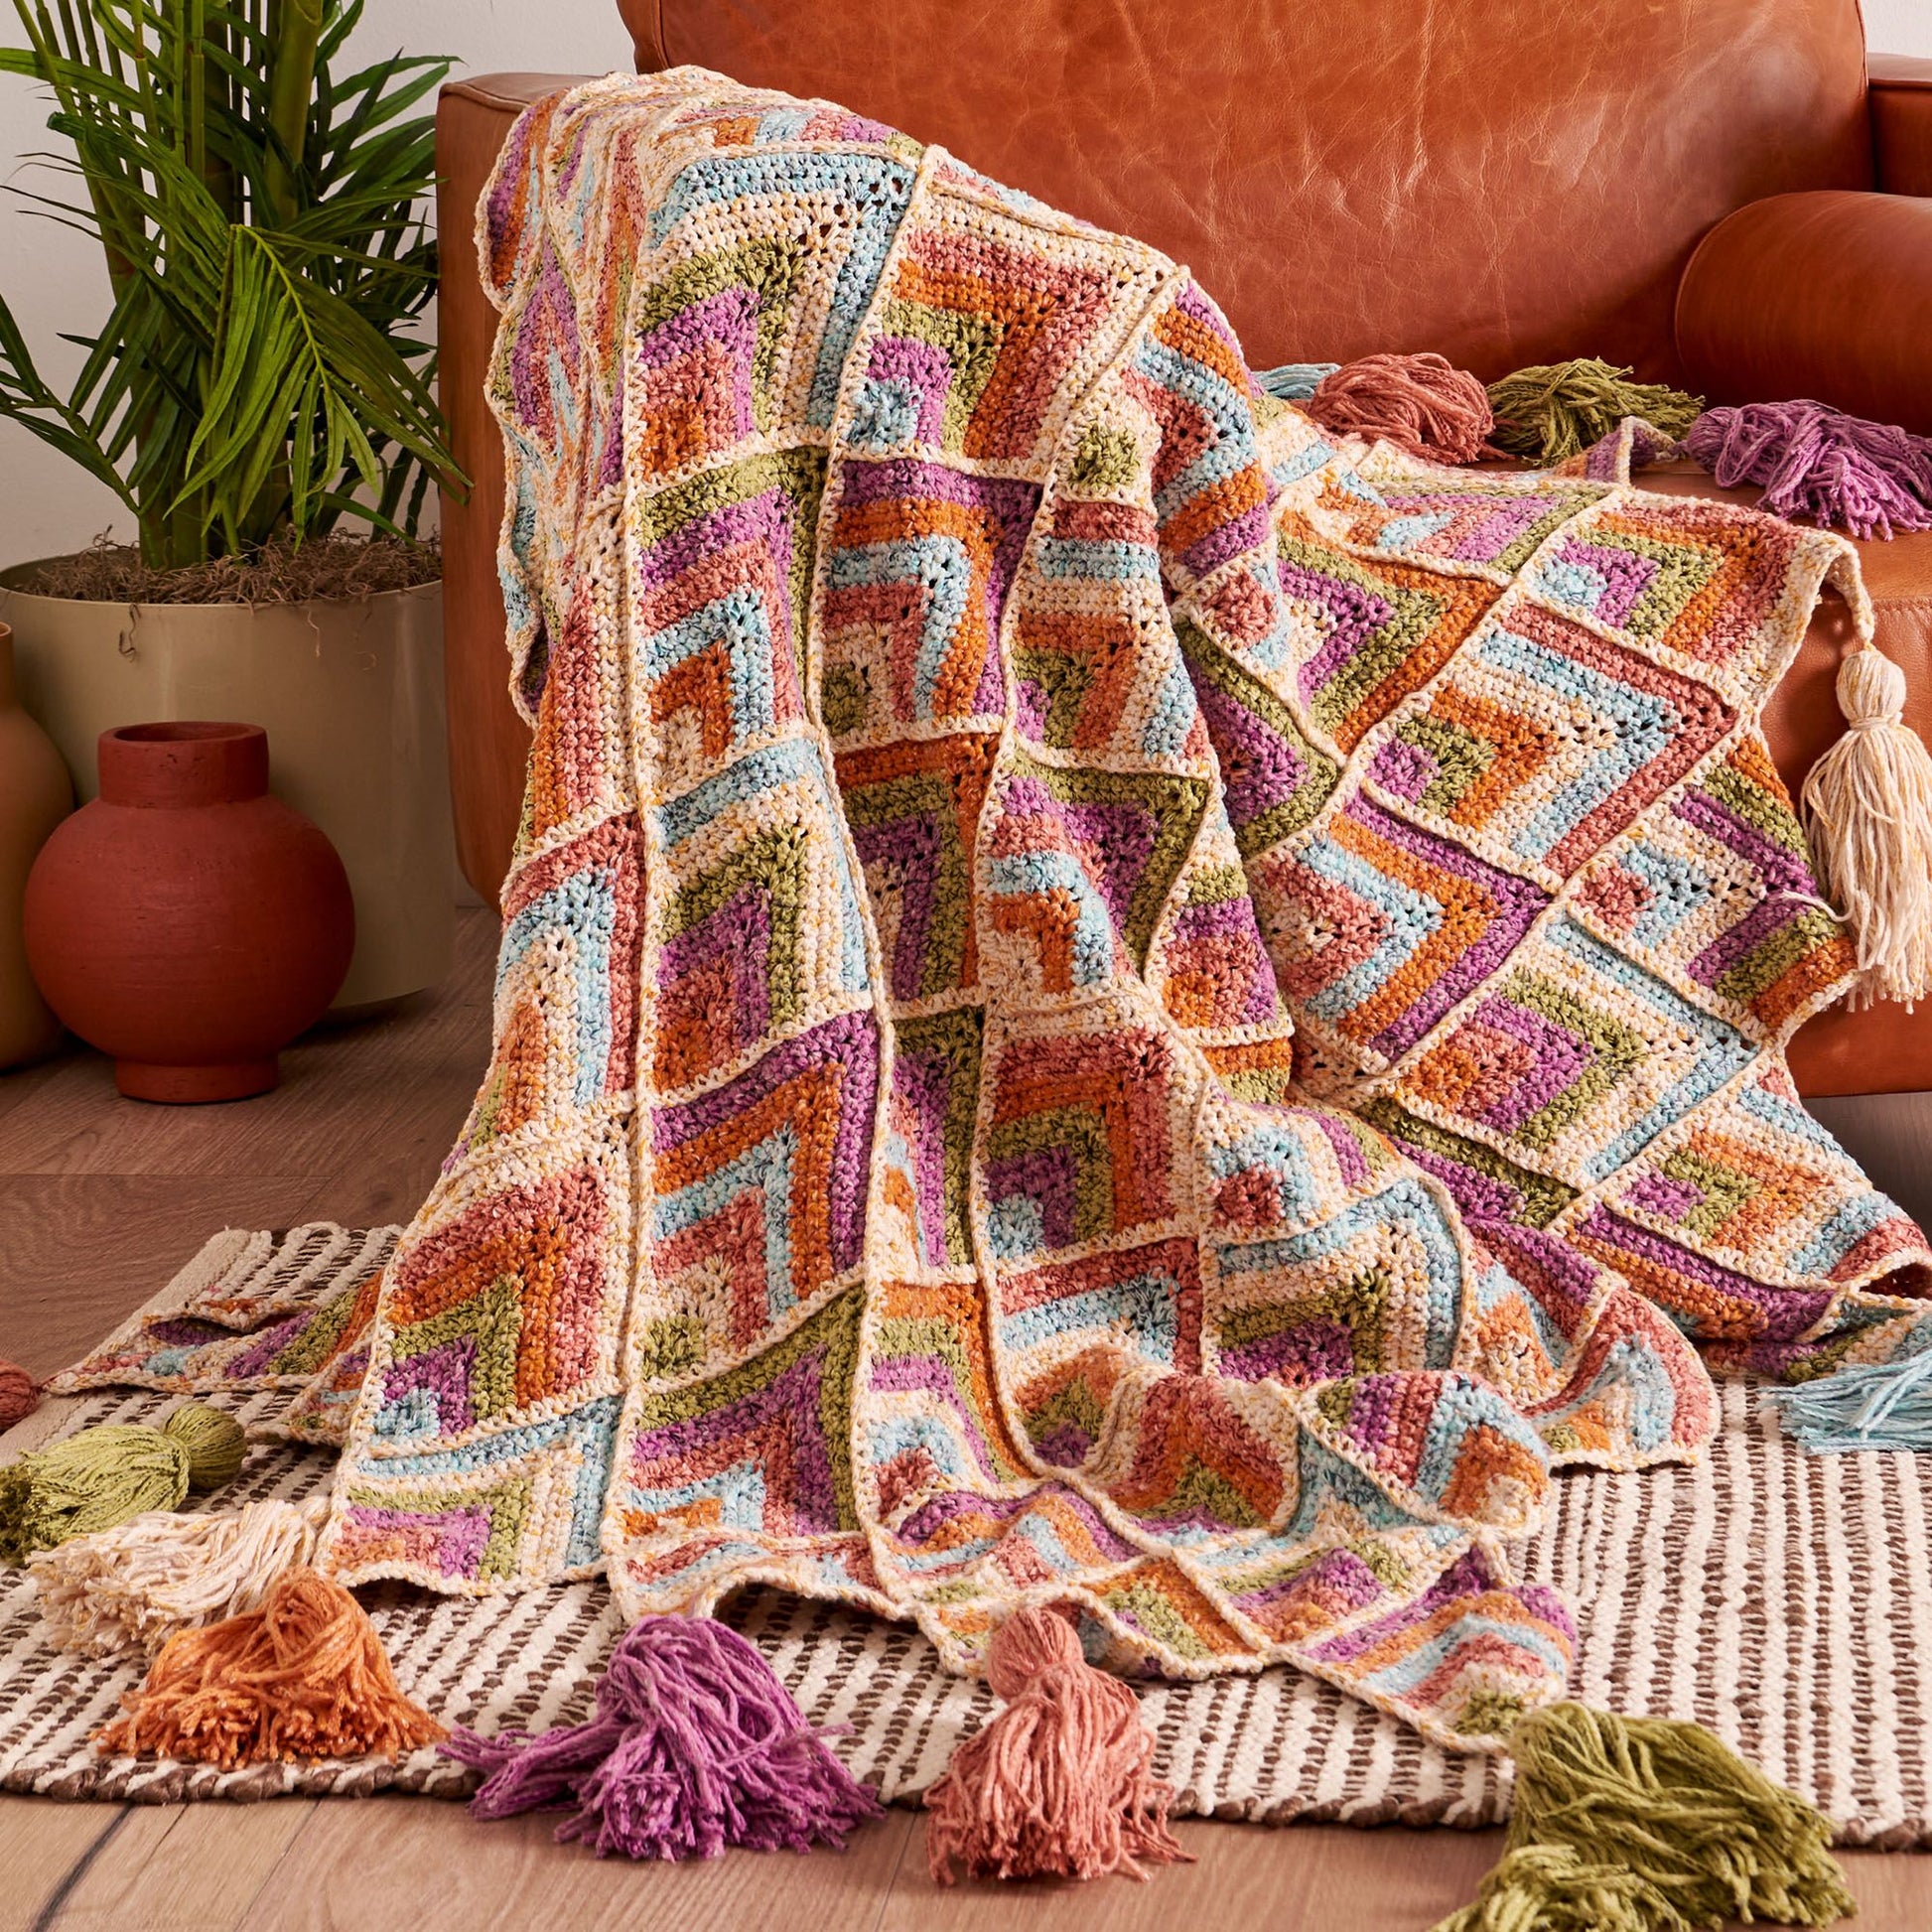 Free Bernat Peaks and Valleys Crochet Blanket Pattern